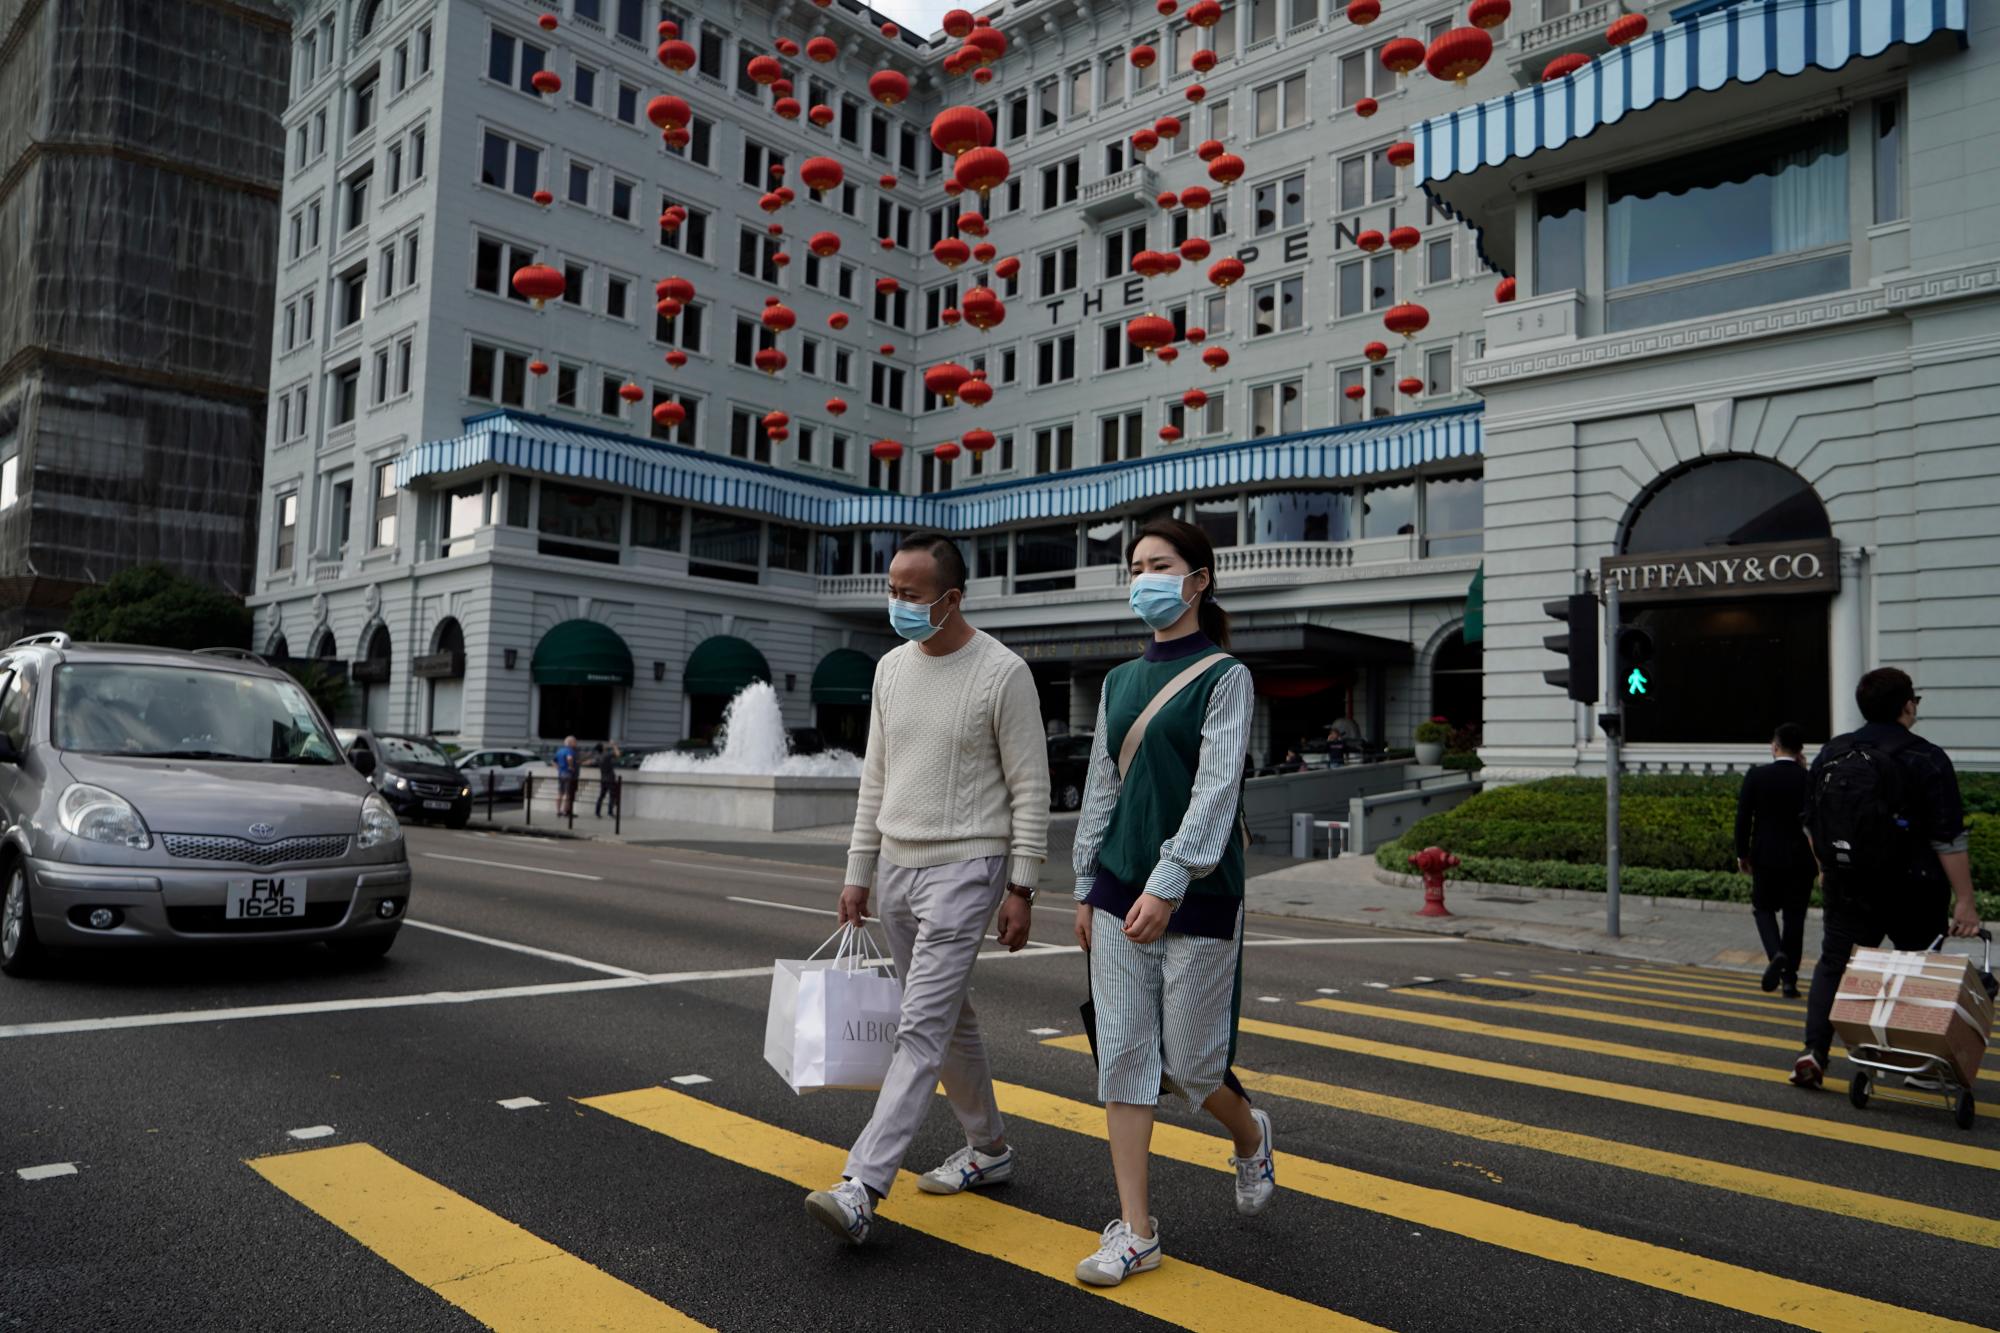 Los turistas usan máscaras faciales protectoras mientras cruzan la calle en Hong Kong, el jueves 23 de enero de 2020. China cerró el jueves una ciudad de más de 11 millones de personas, deteniendo el transporte y advirtiendo contra las reuniones públicas, para tratar de detener la propagación de un nuevo virus mortal que ha enfermado a cientos y se ha extendido a otras ciudades y países en la carrera de viajes del Año Nuevo Lunar. 